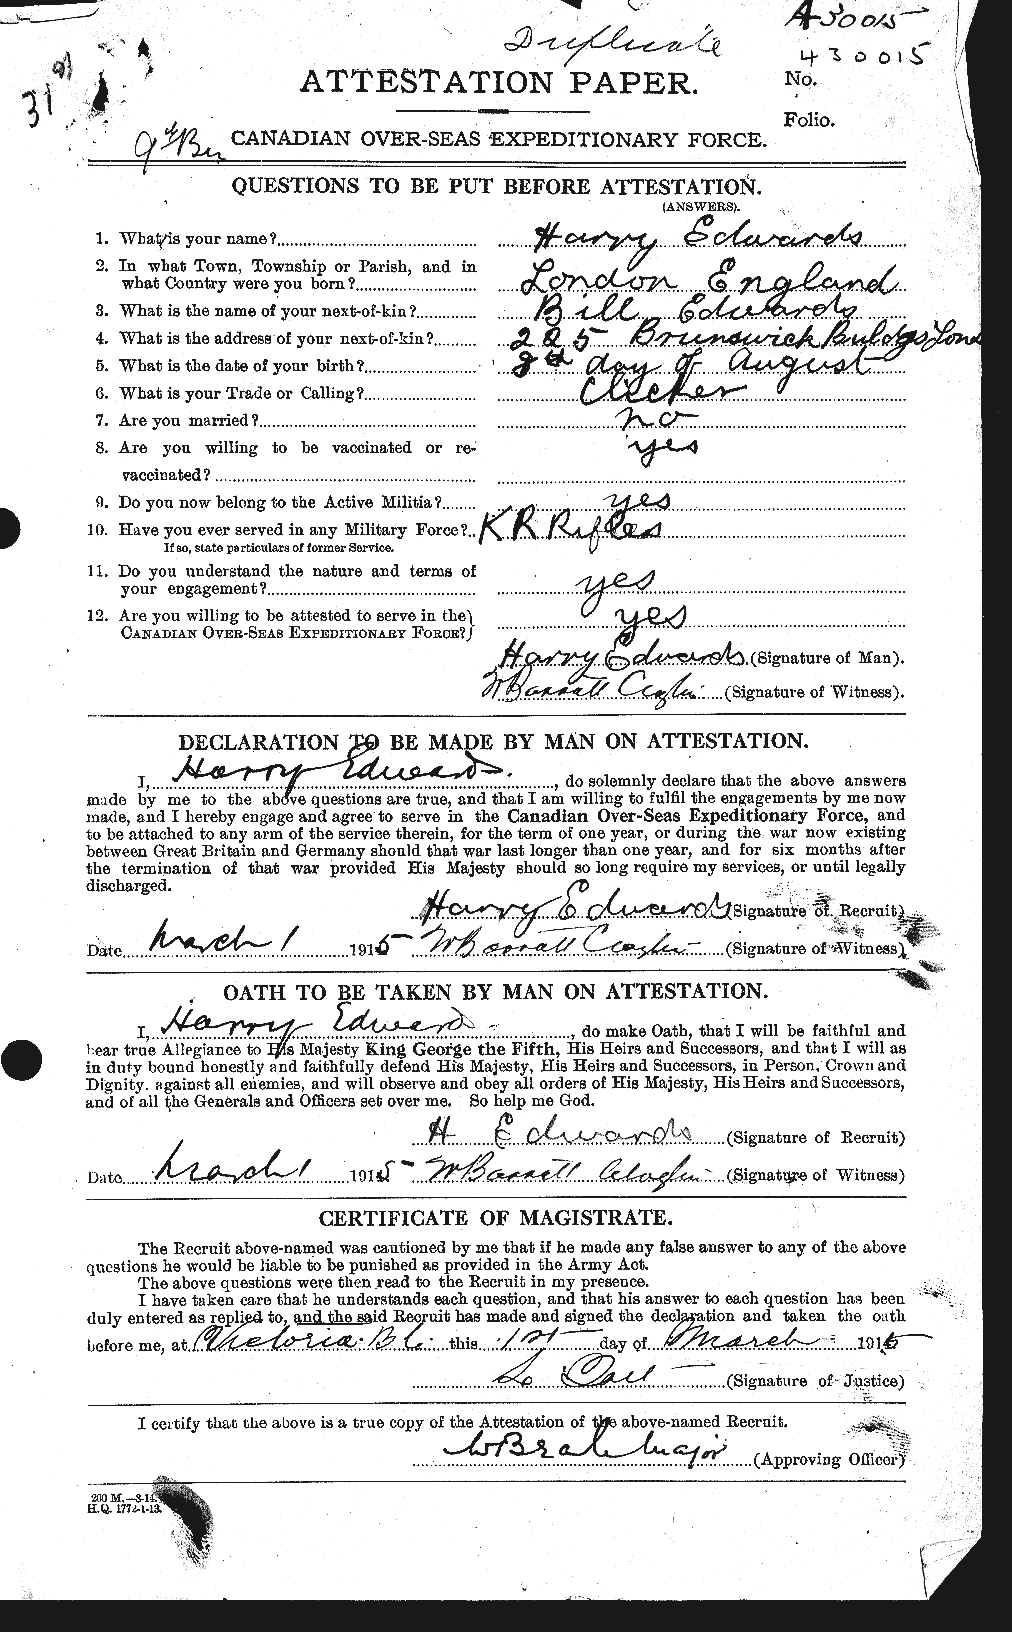 Dossiers du Personnel de la Première Guerre mondiale - CEC 309726a